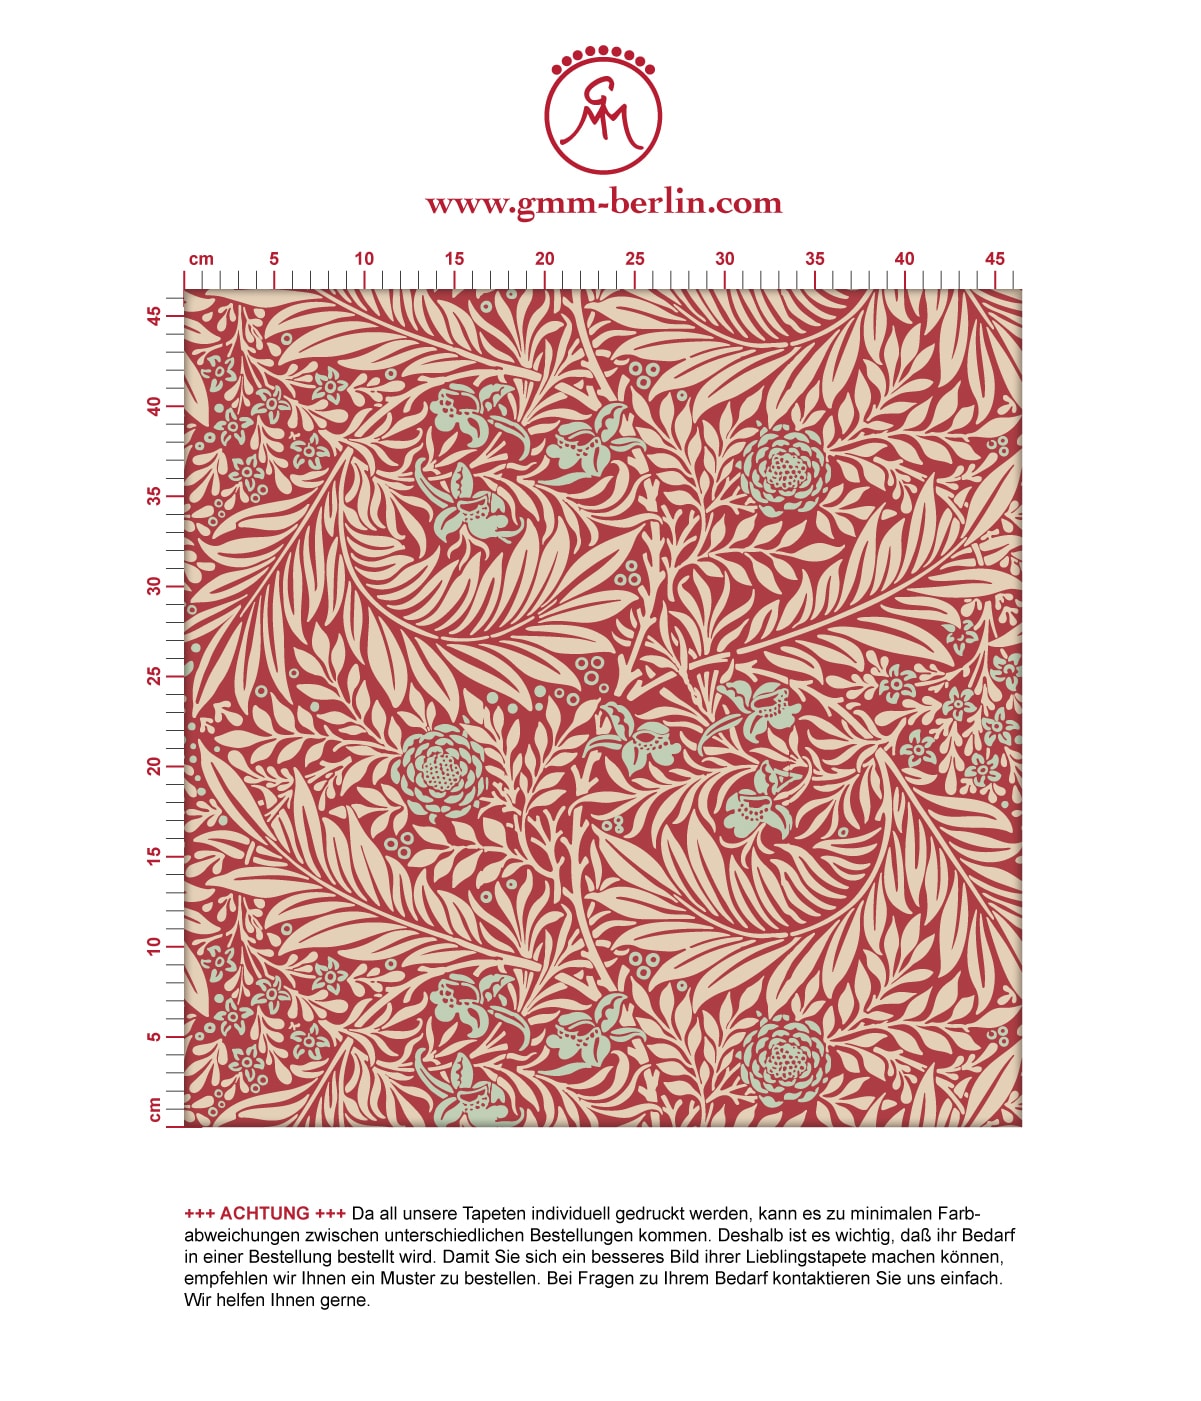 Feine Jugendstil Tapete "Délice florale" nach William Morris, rote Tapete, großer Rapport für Schlafzimmer. Aus dem GMM-BERLIN.com Sortiment: Schöne Tapeten in der Farbe: grün